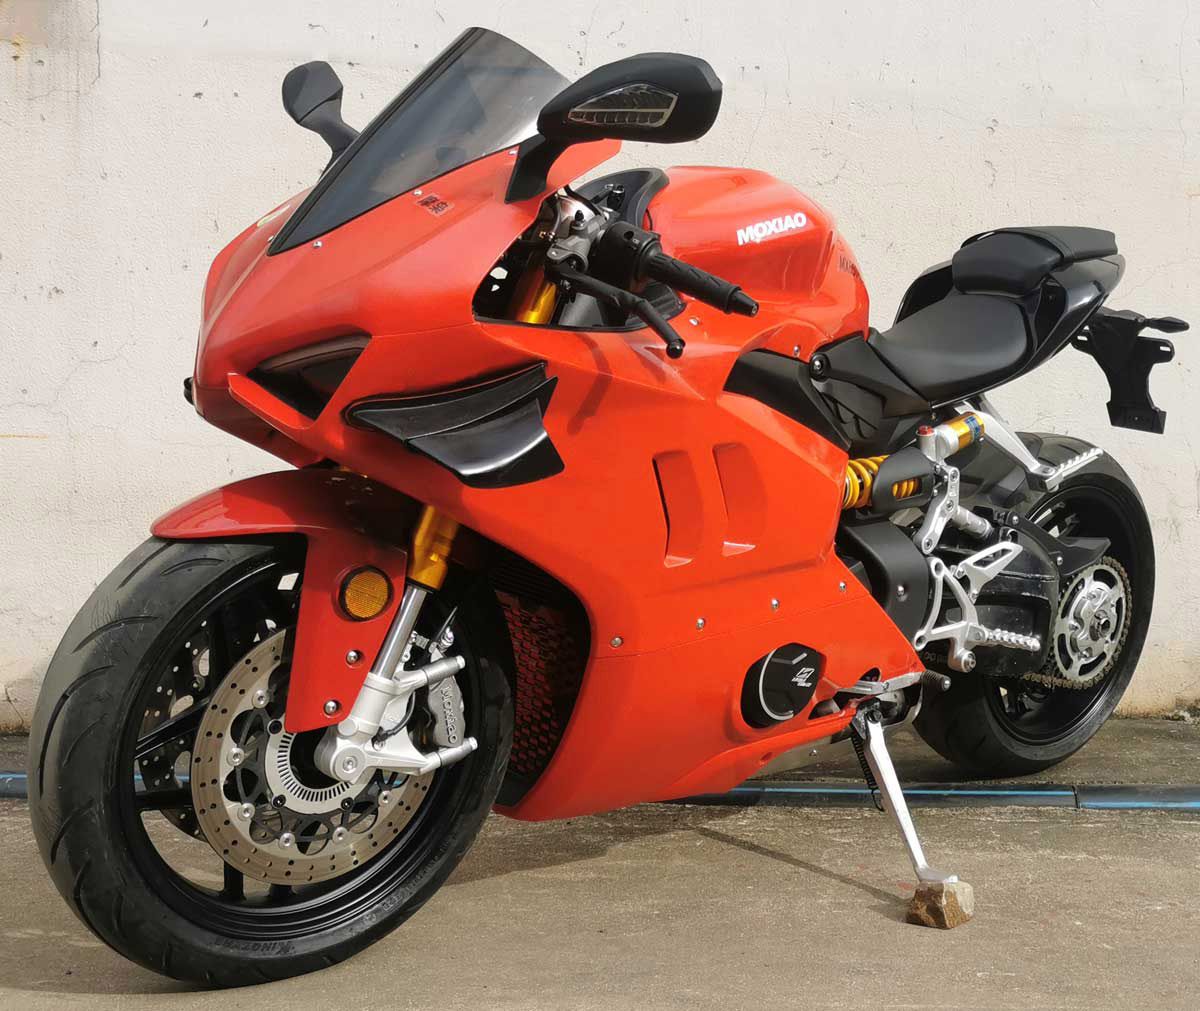 La moto china Moxiao MX650, una Ducati Panigale V4 Fake con la mitad de potencia